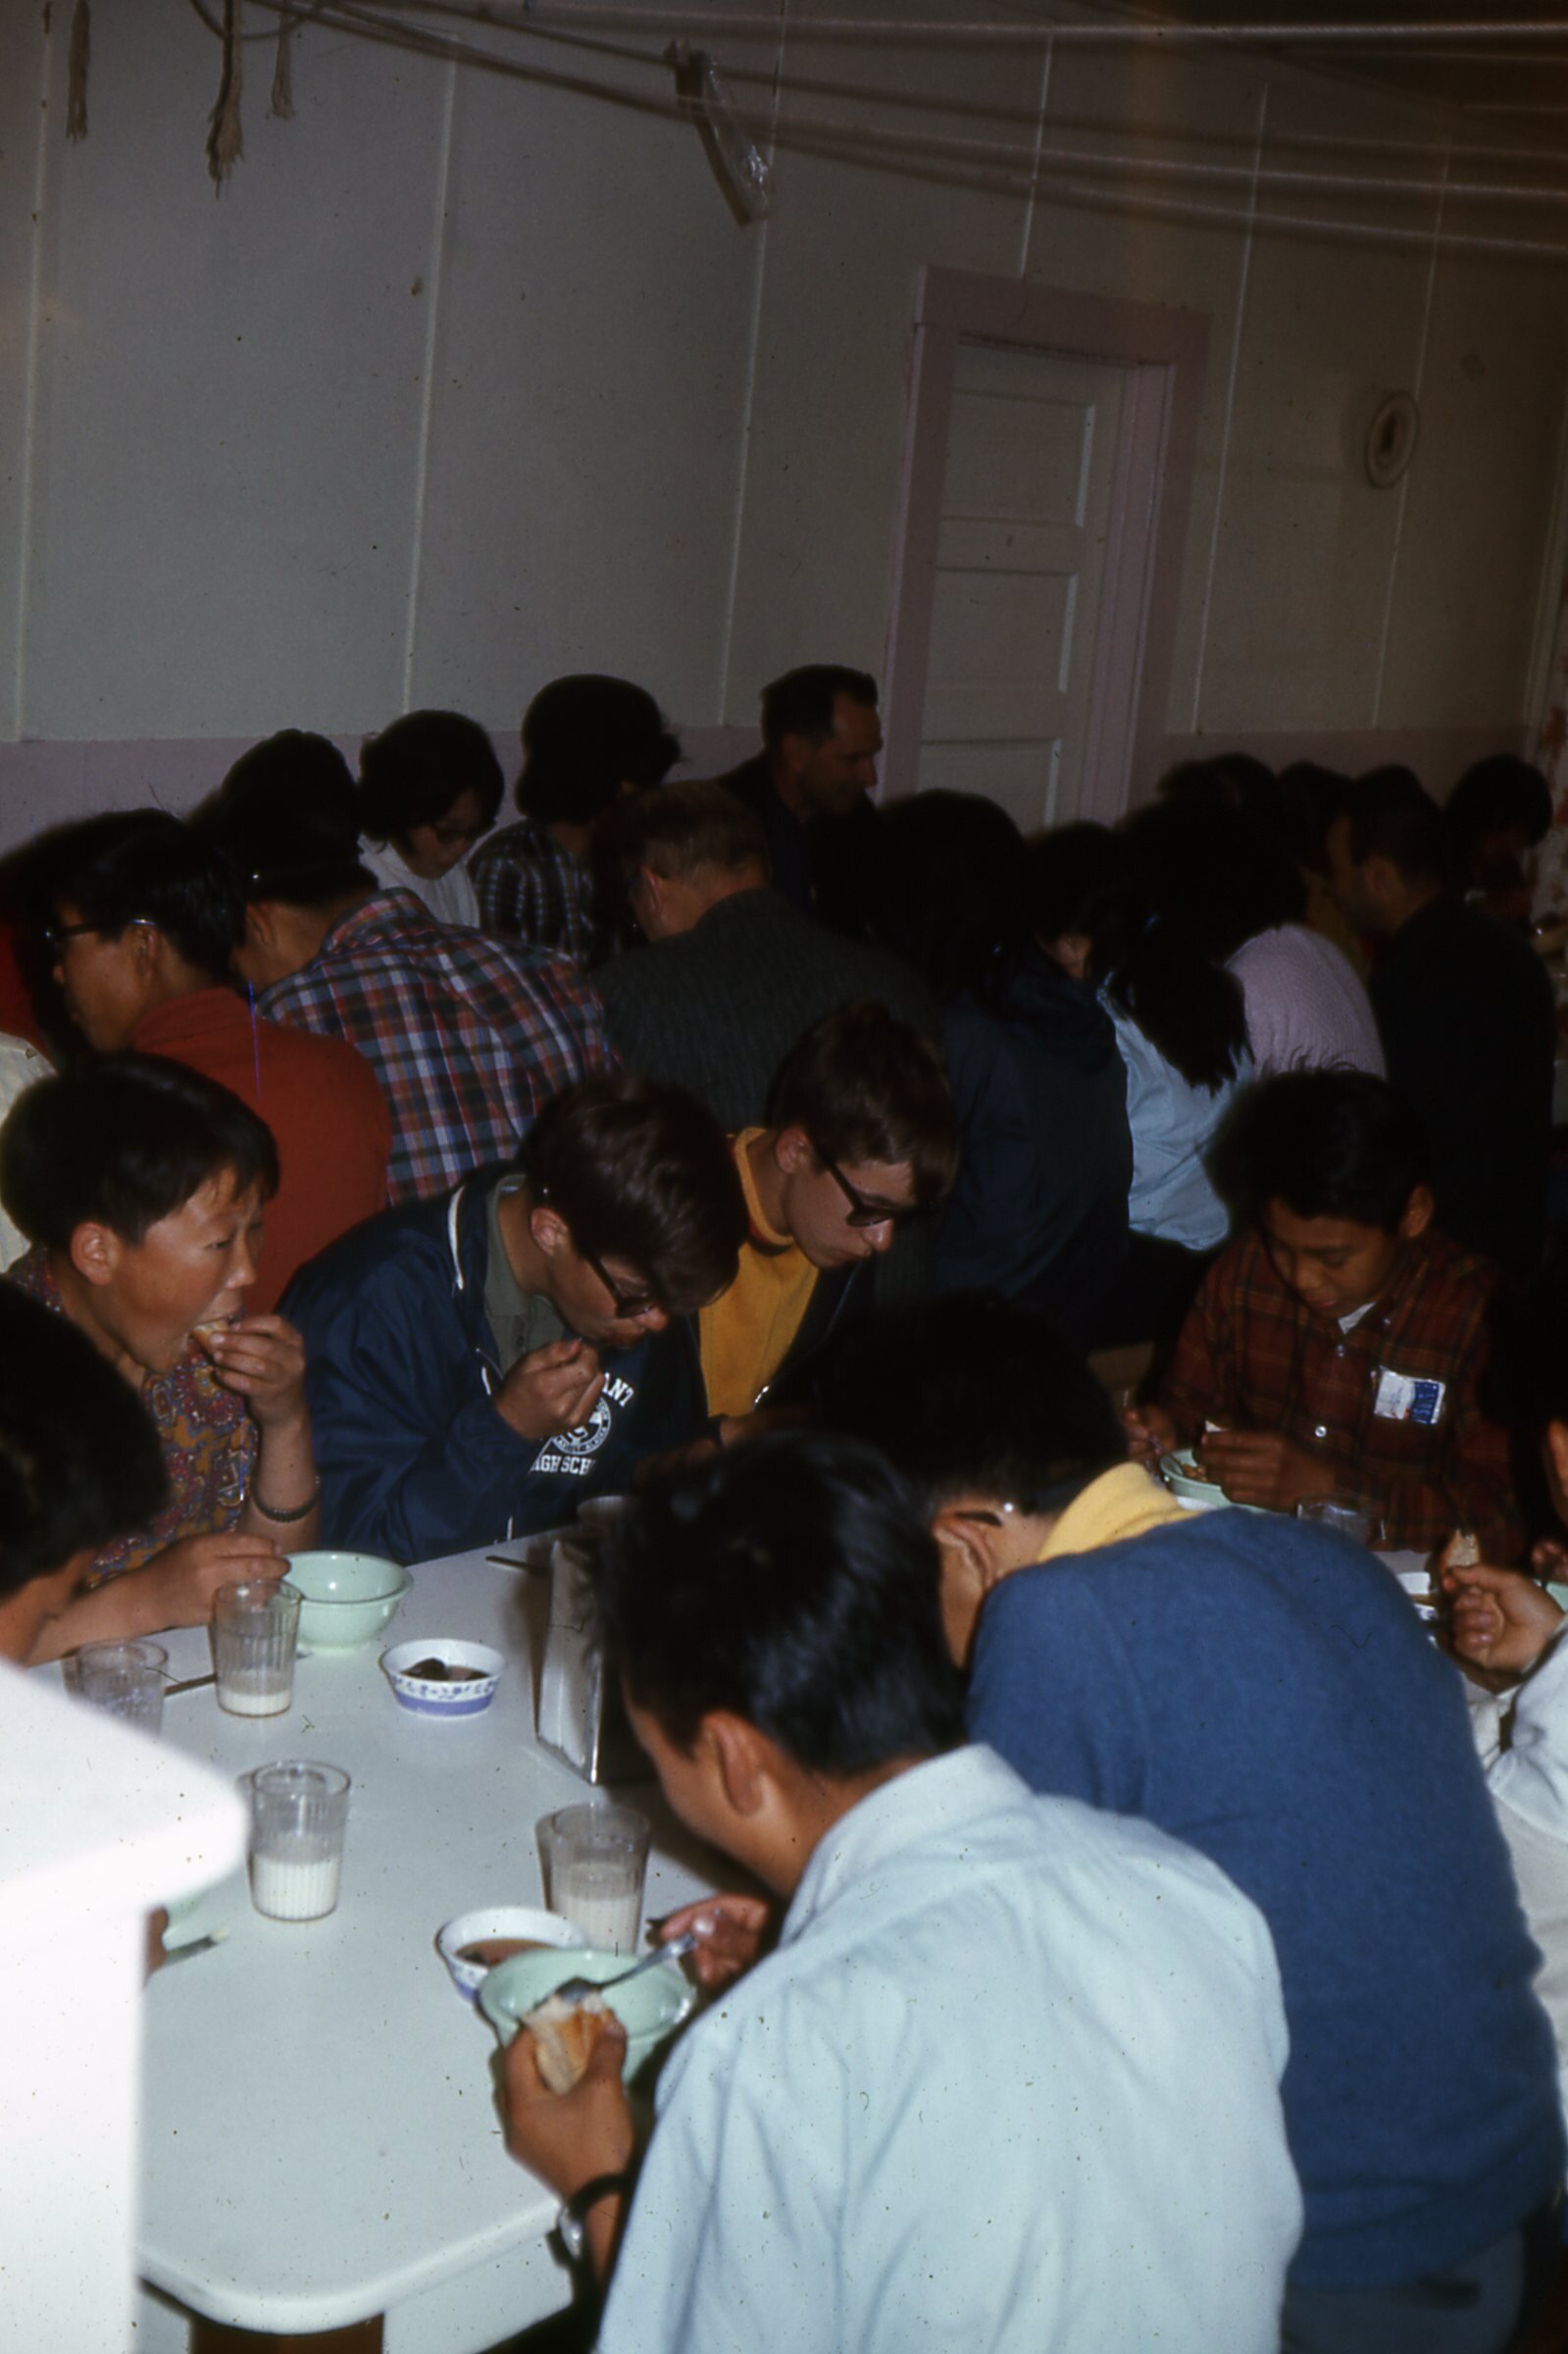 1969 eating in dining room.jpg